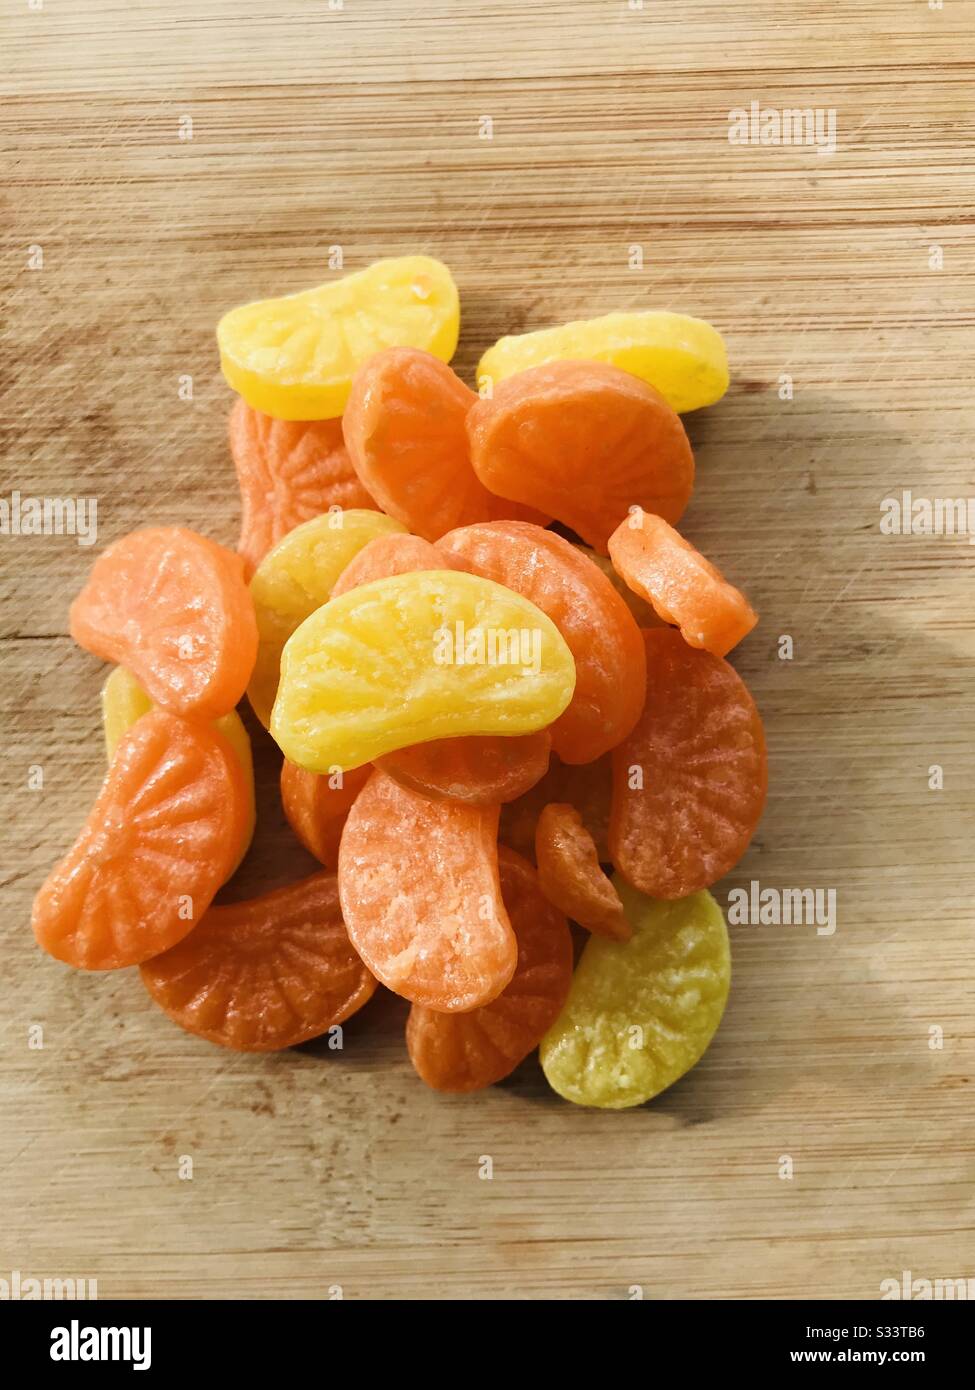 Bonbons aux agrumes - Naranga mittai- bonbons à sucre de couleur orange et  jaune-achetés à l'épicerie fond planche en bois- mode de changement de  couleur- gros plan des bonbons à la marmalade